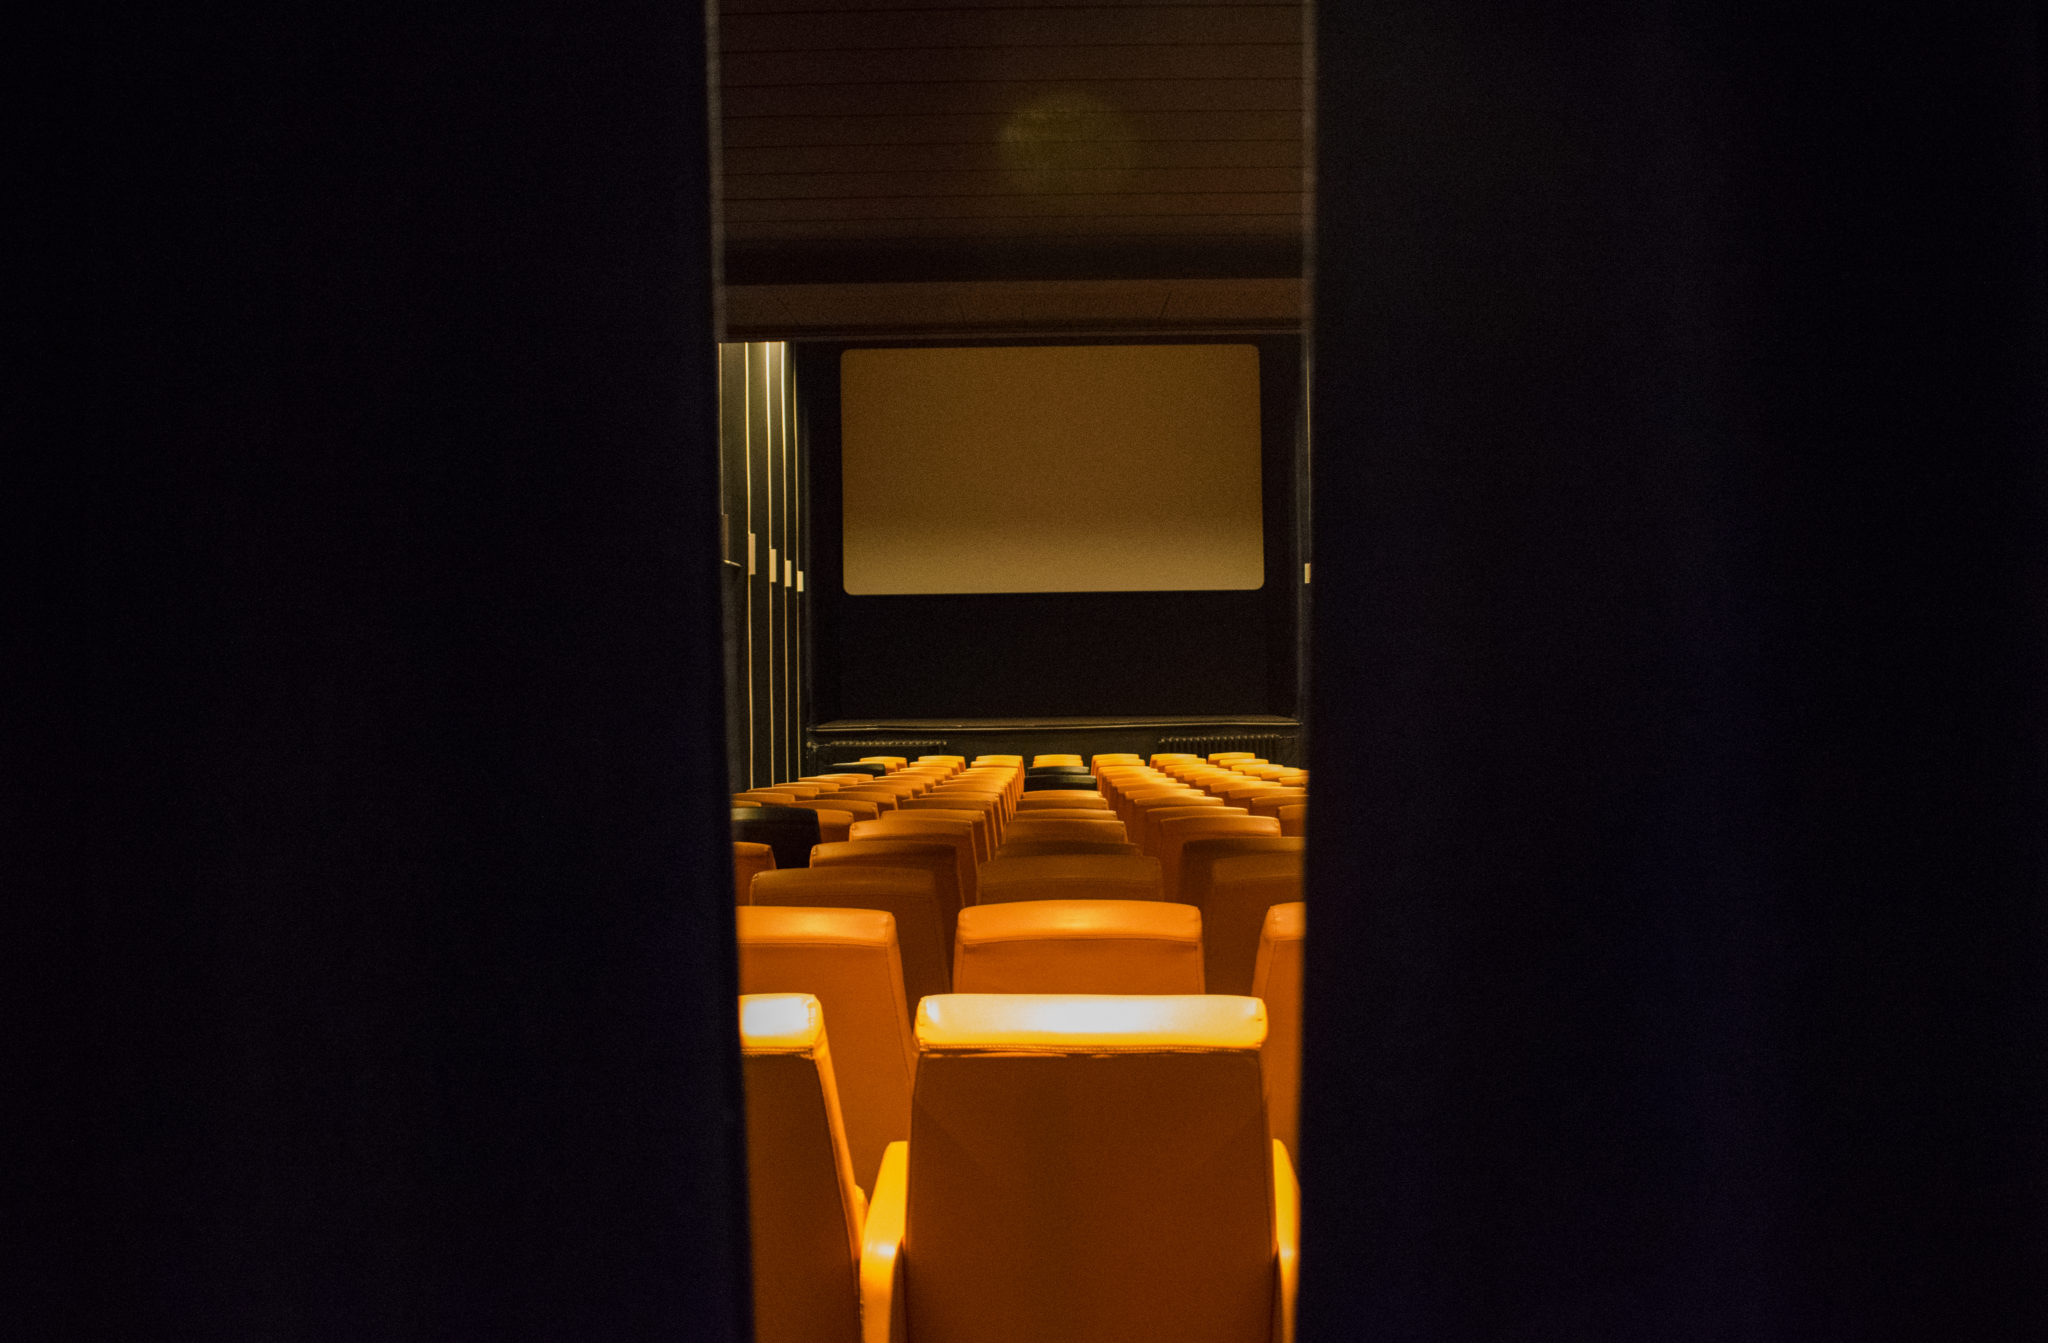 Nel 1976 alcuni studenti aprono un cinema di cui sono i primi spettatori: pellicole diverse dal solito. Oggi il Cinema Mignon è aperto a tutti